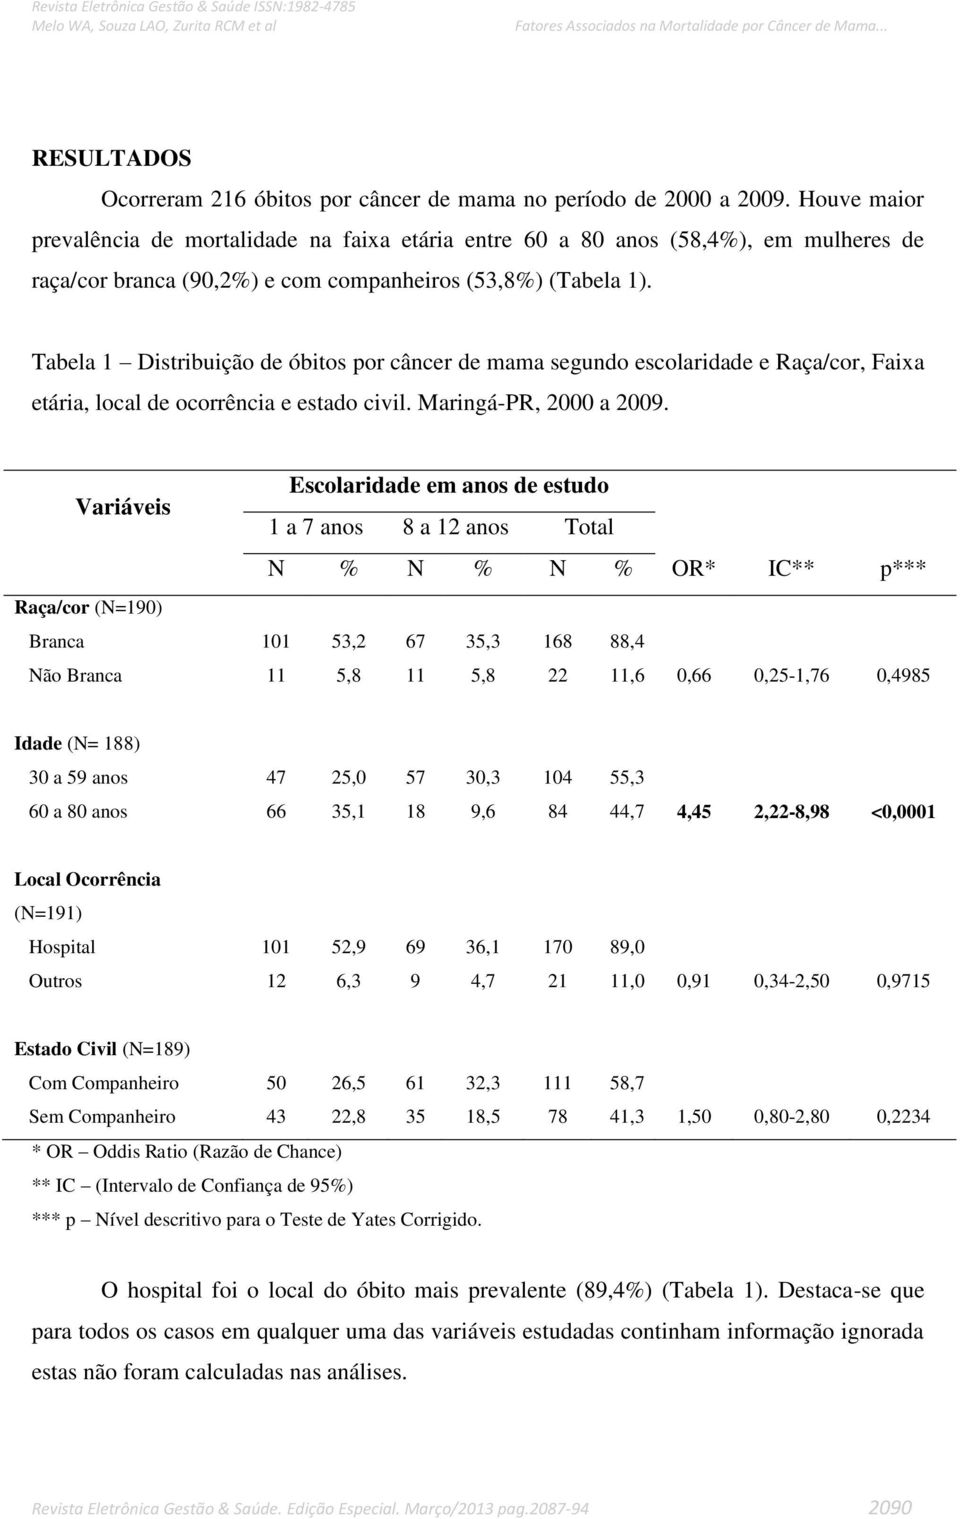 Tabela 1 Distribuição de óbitos por câncer de mama segundo escolaridade e Raça/cor, Faixa etária, local de ocorrência e estado civil. Maringá-PR, 2000 a 2009.